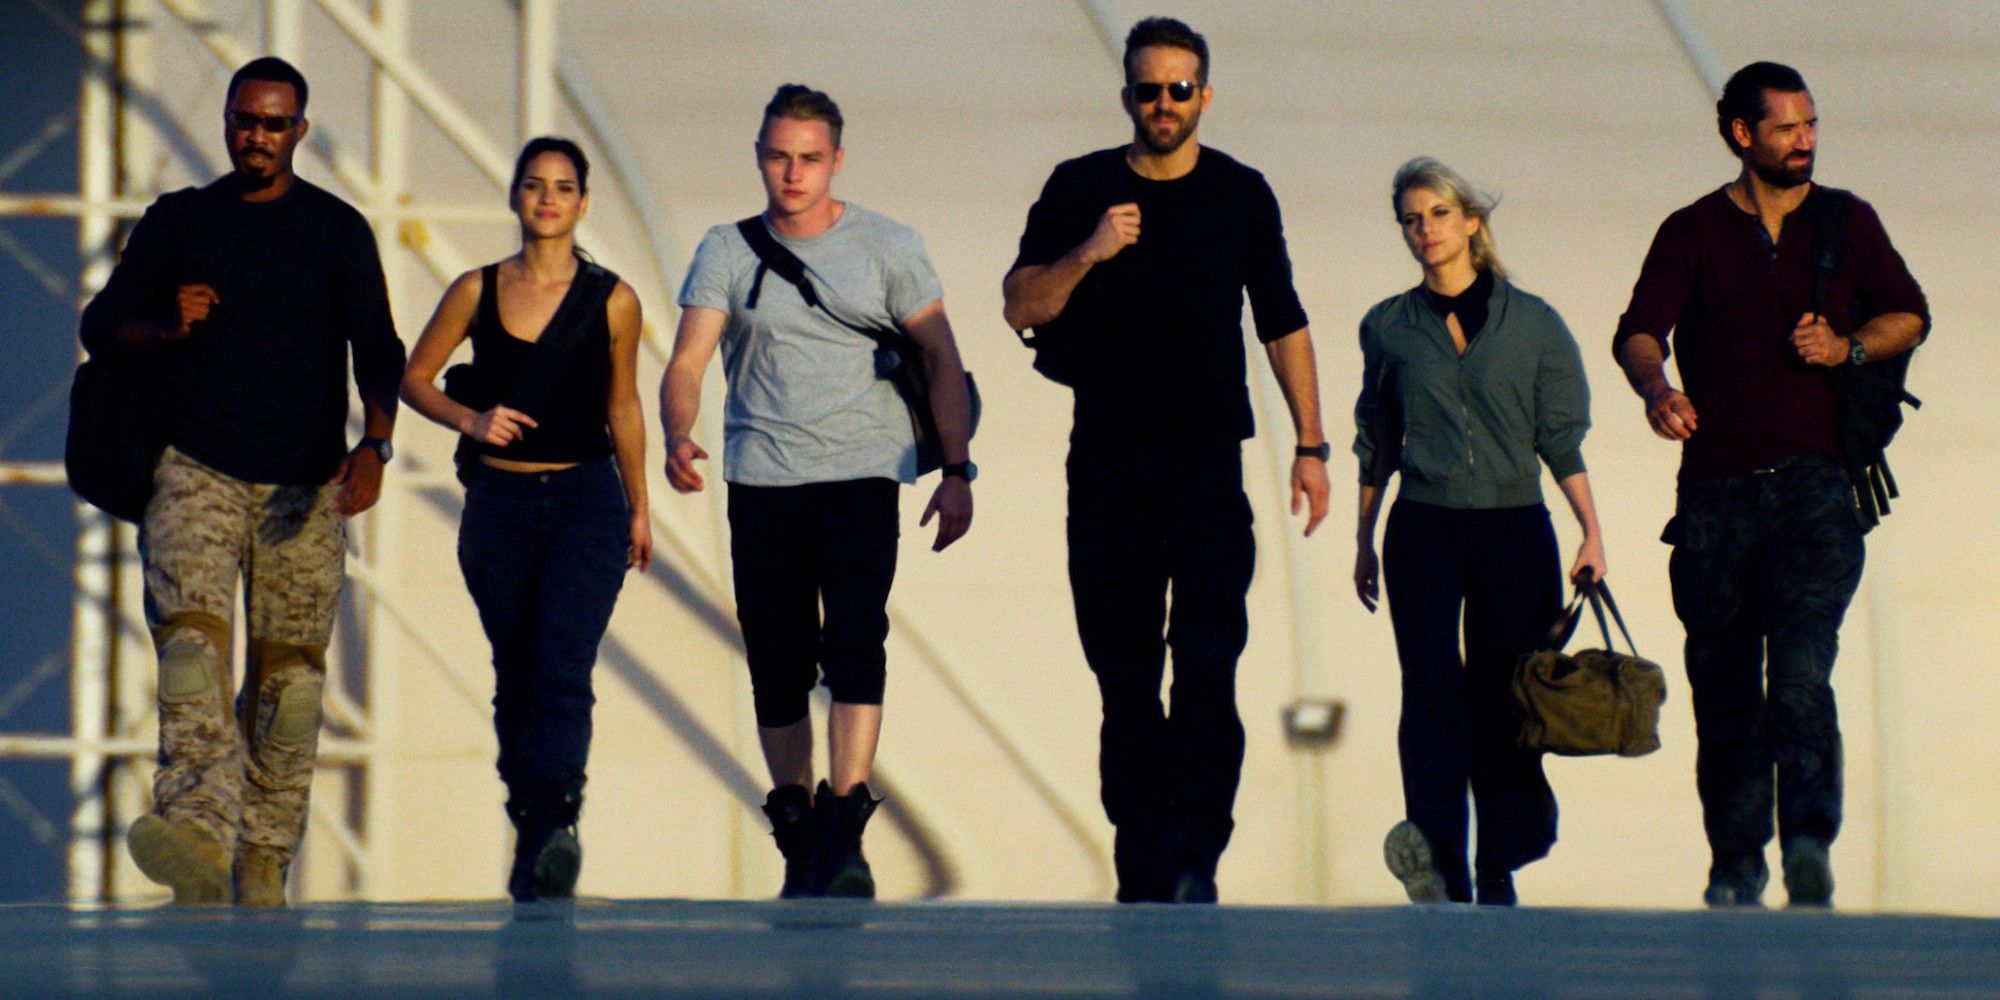 The 6 Underground team walking together